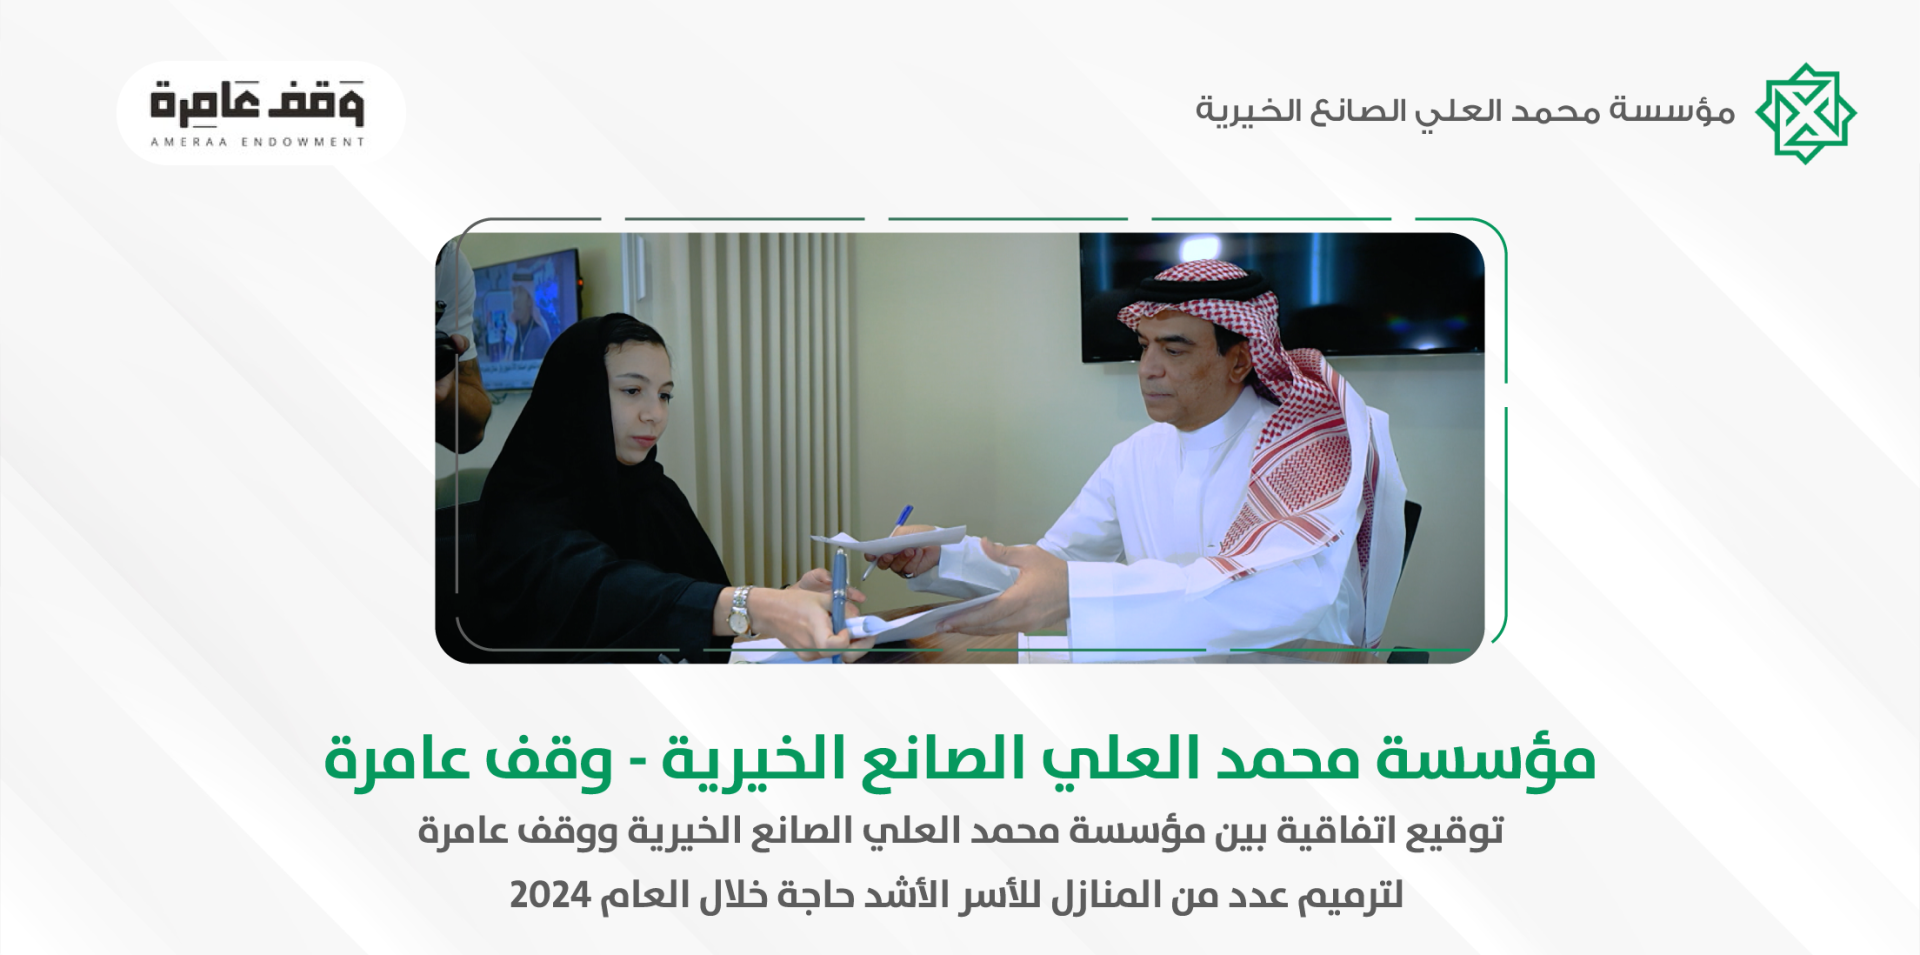 مؤسسة محمد العلي الصانع الخيرية ووقف عامرة يوقعان اتفاقية لترميم المنازل خلال العام 2024